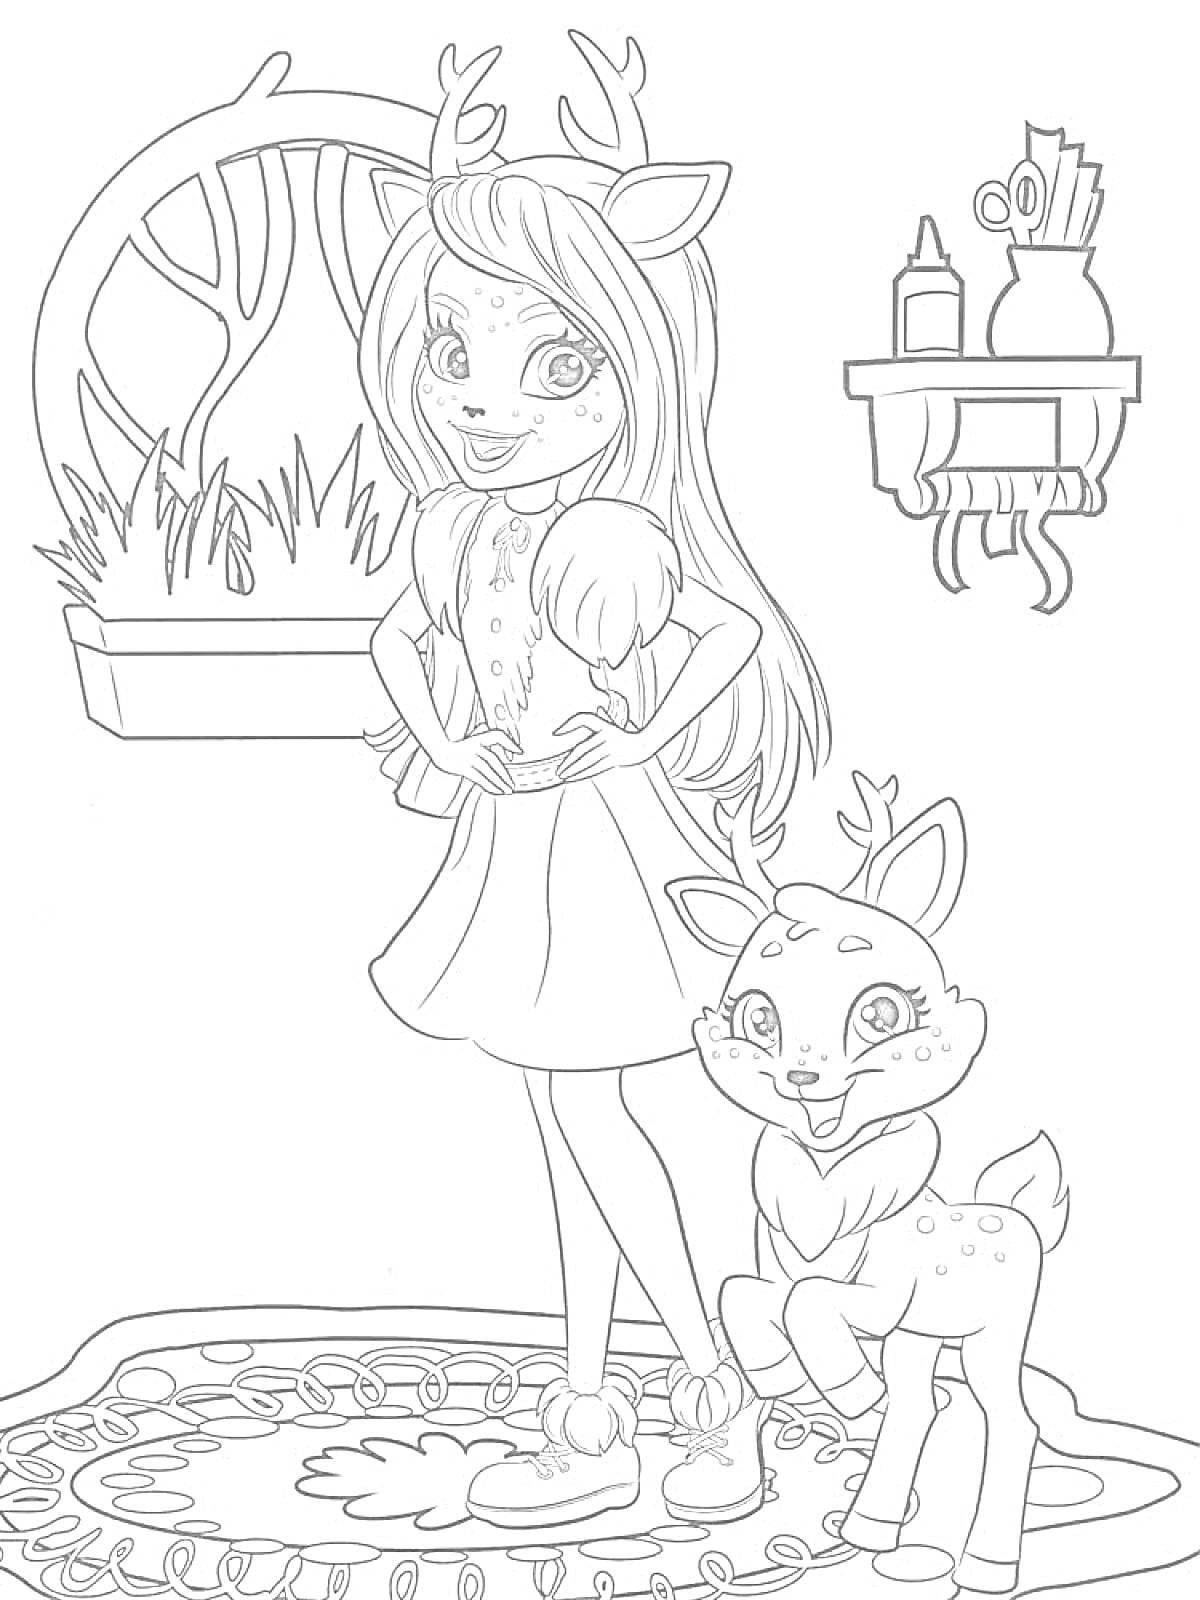 Раскраска Девочка с оленьими рожками и олешек на ковре у окна с травой и полки с предметами